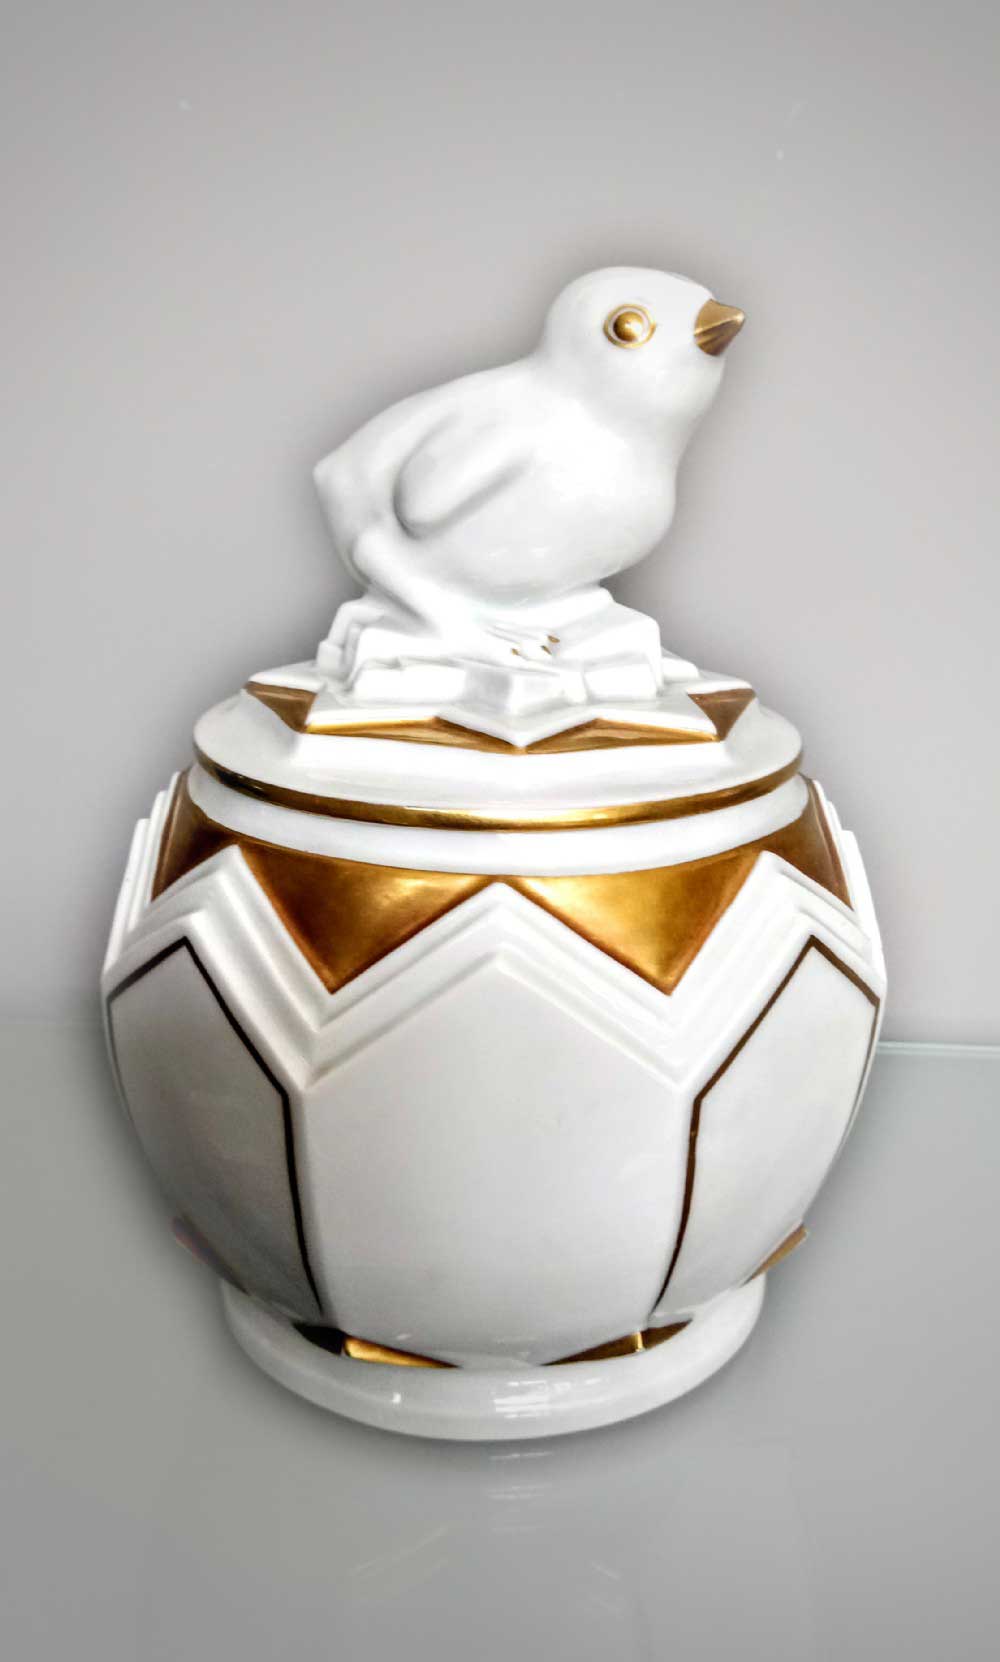 Fraureuth Porcelain Gilded Chick Lidded Vase, from Narissa Mather